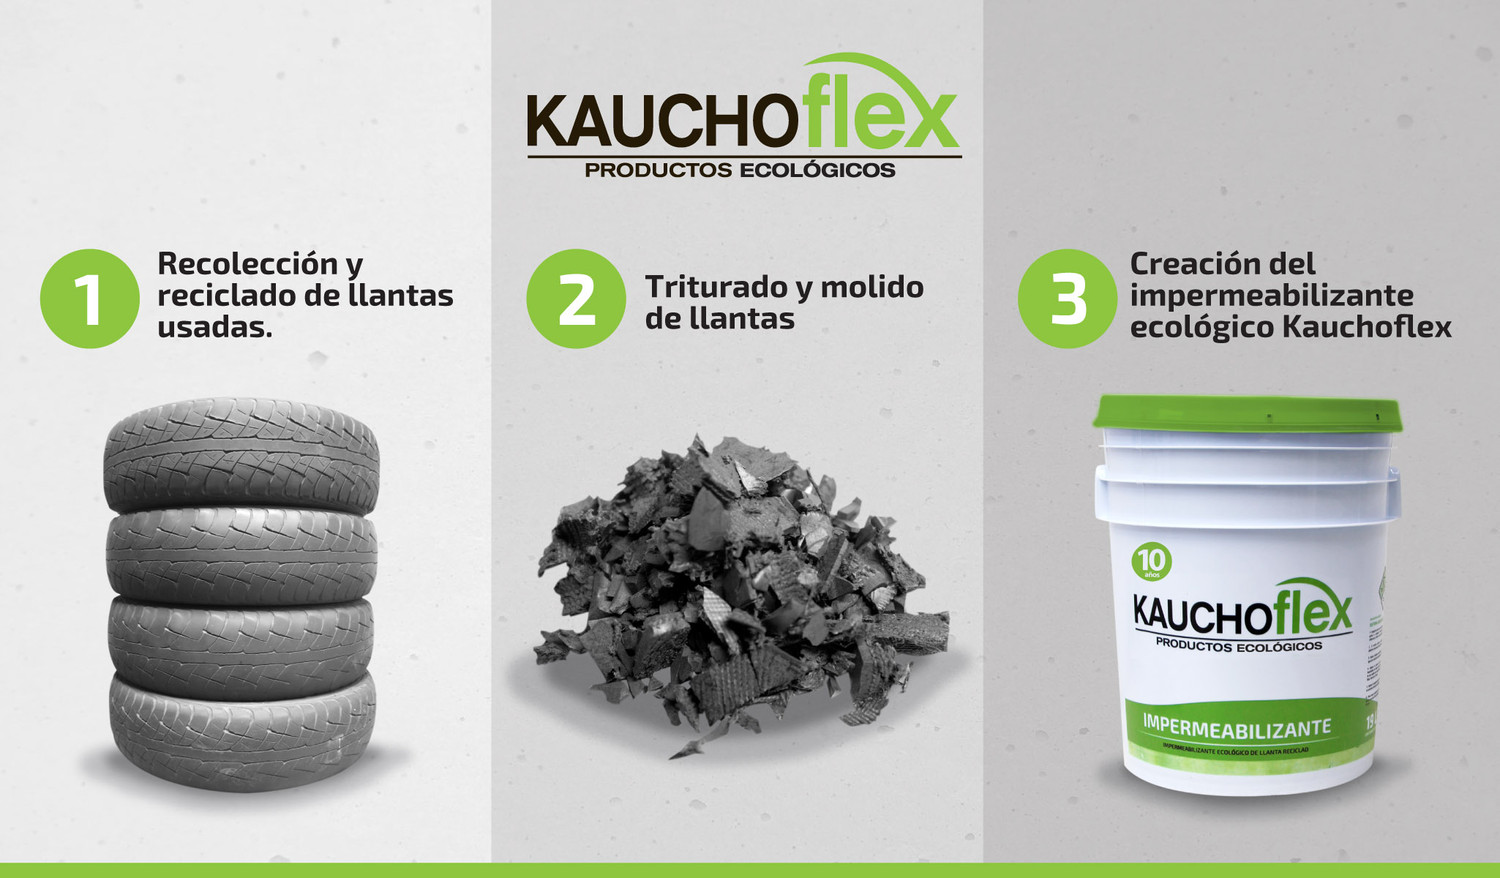 https://images.ssstatic.com/impermeabilizante-ecologico-de-caucho-liquido-reciclado-kauchoflex-ecoprotect-12-65437334.jpg